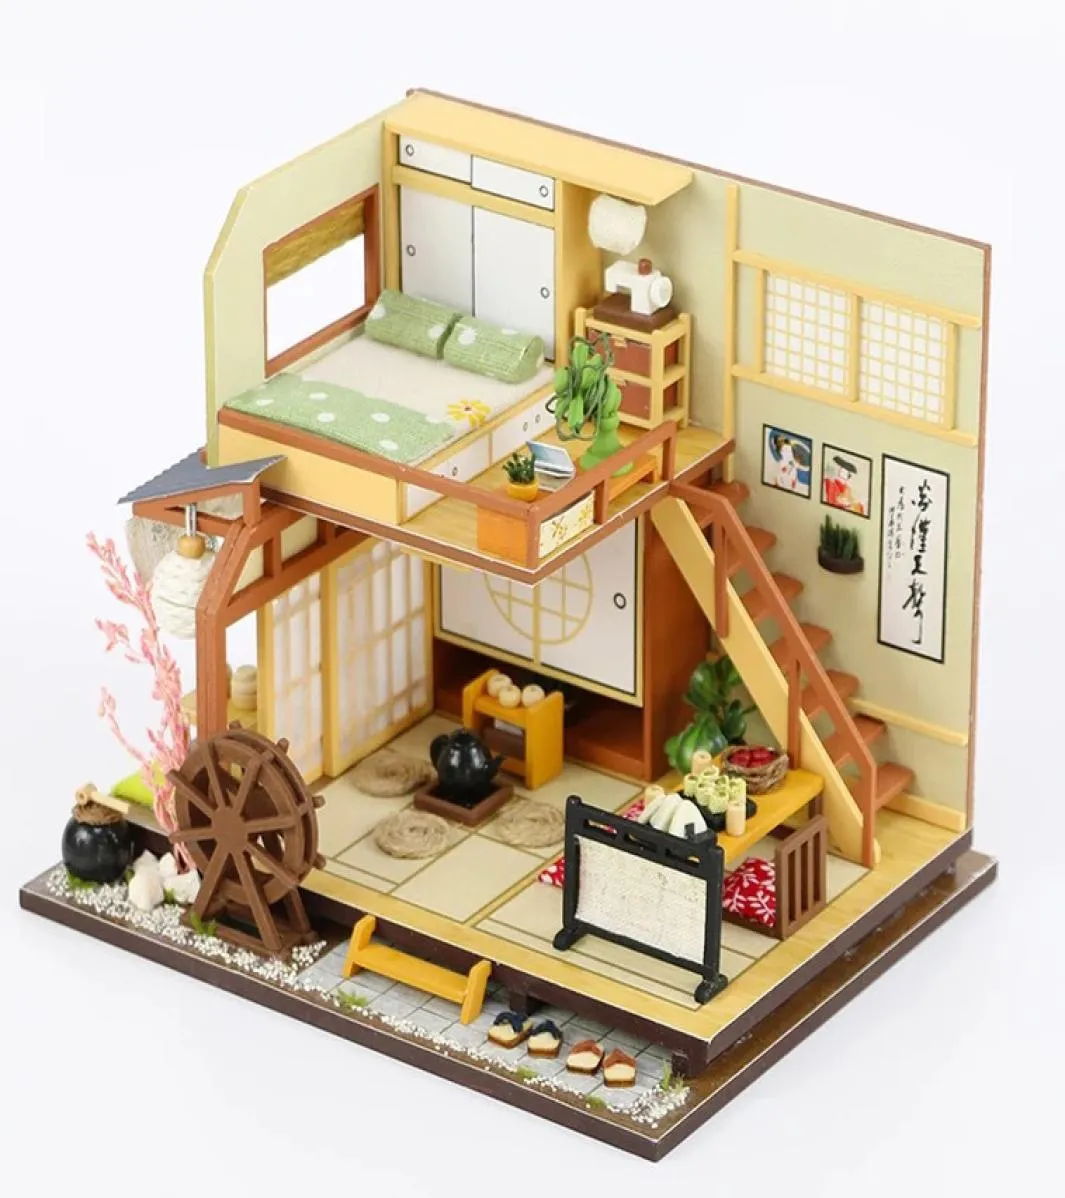 البناء على طراز اليابان الجمعية المصنوعة يدويًا خشب كوخ DIY DIY DOLLHOUSE HOUS